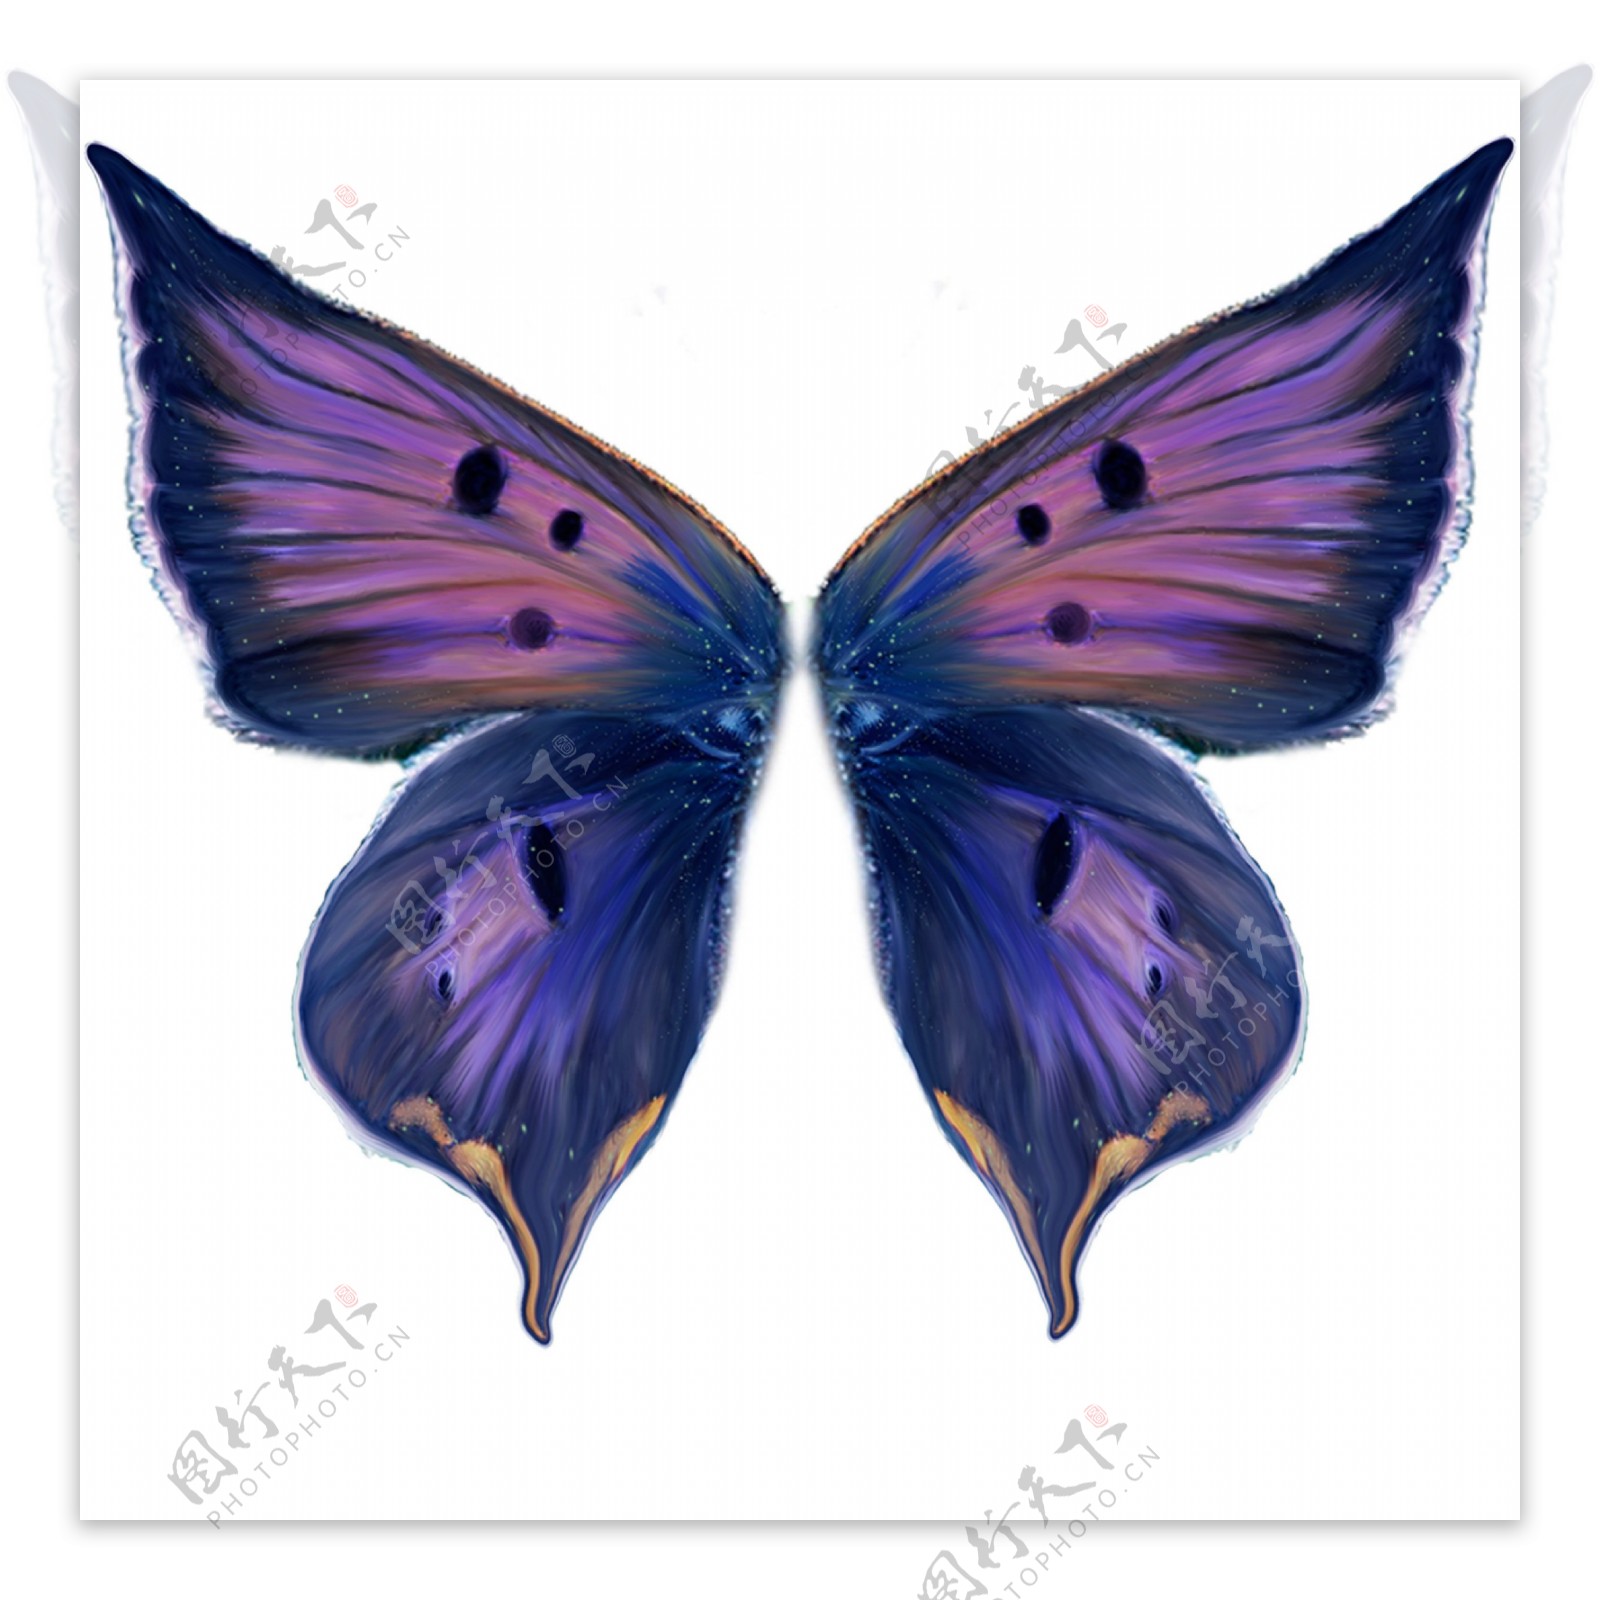 紫蝴蝶翅膀